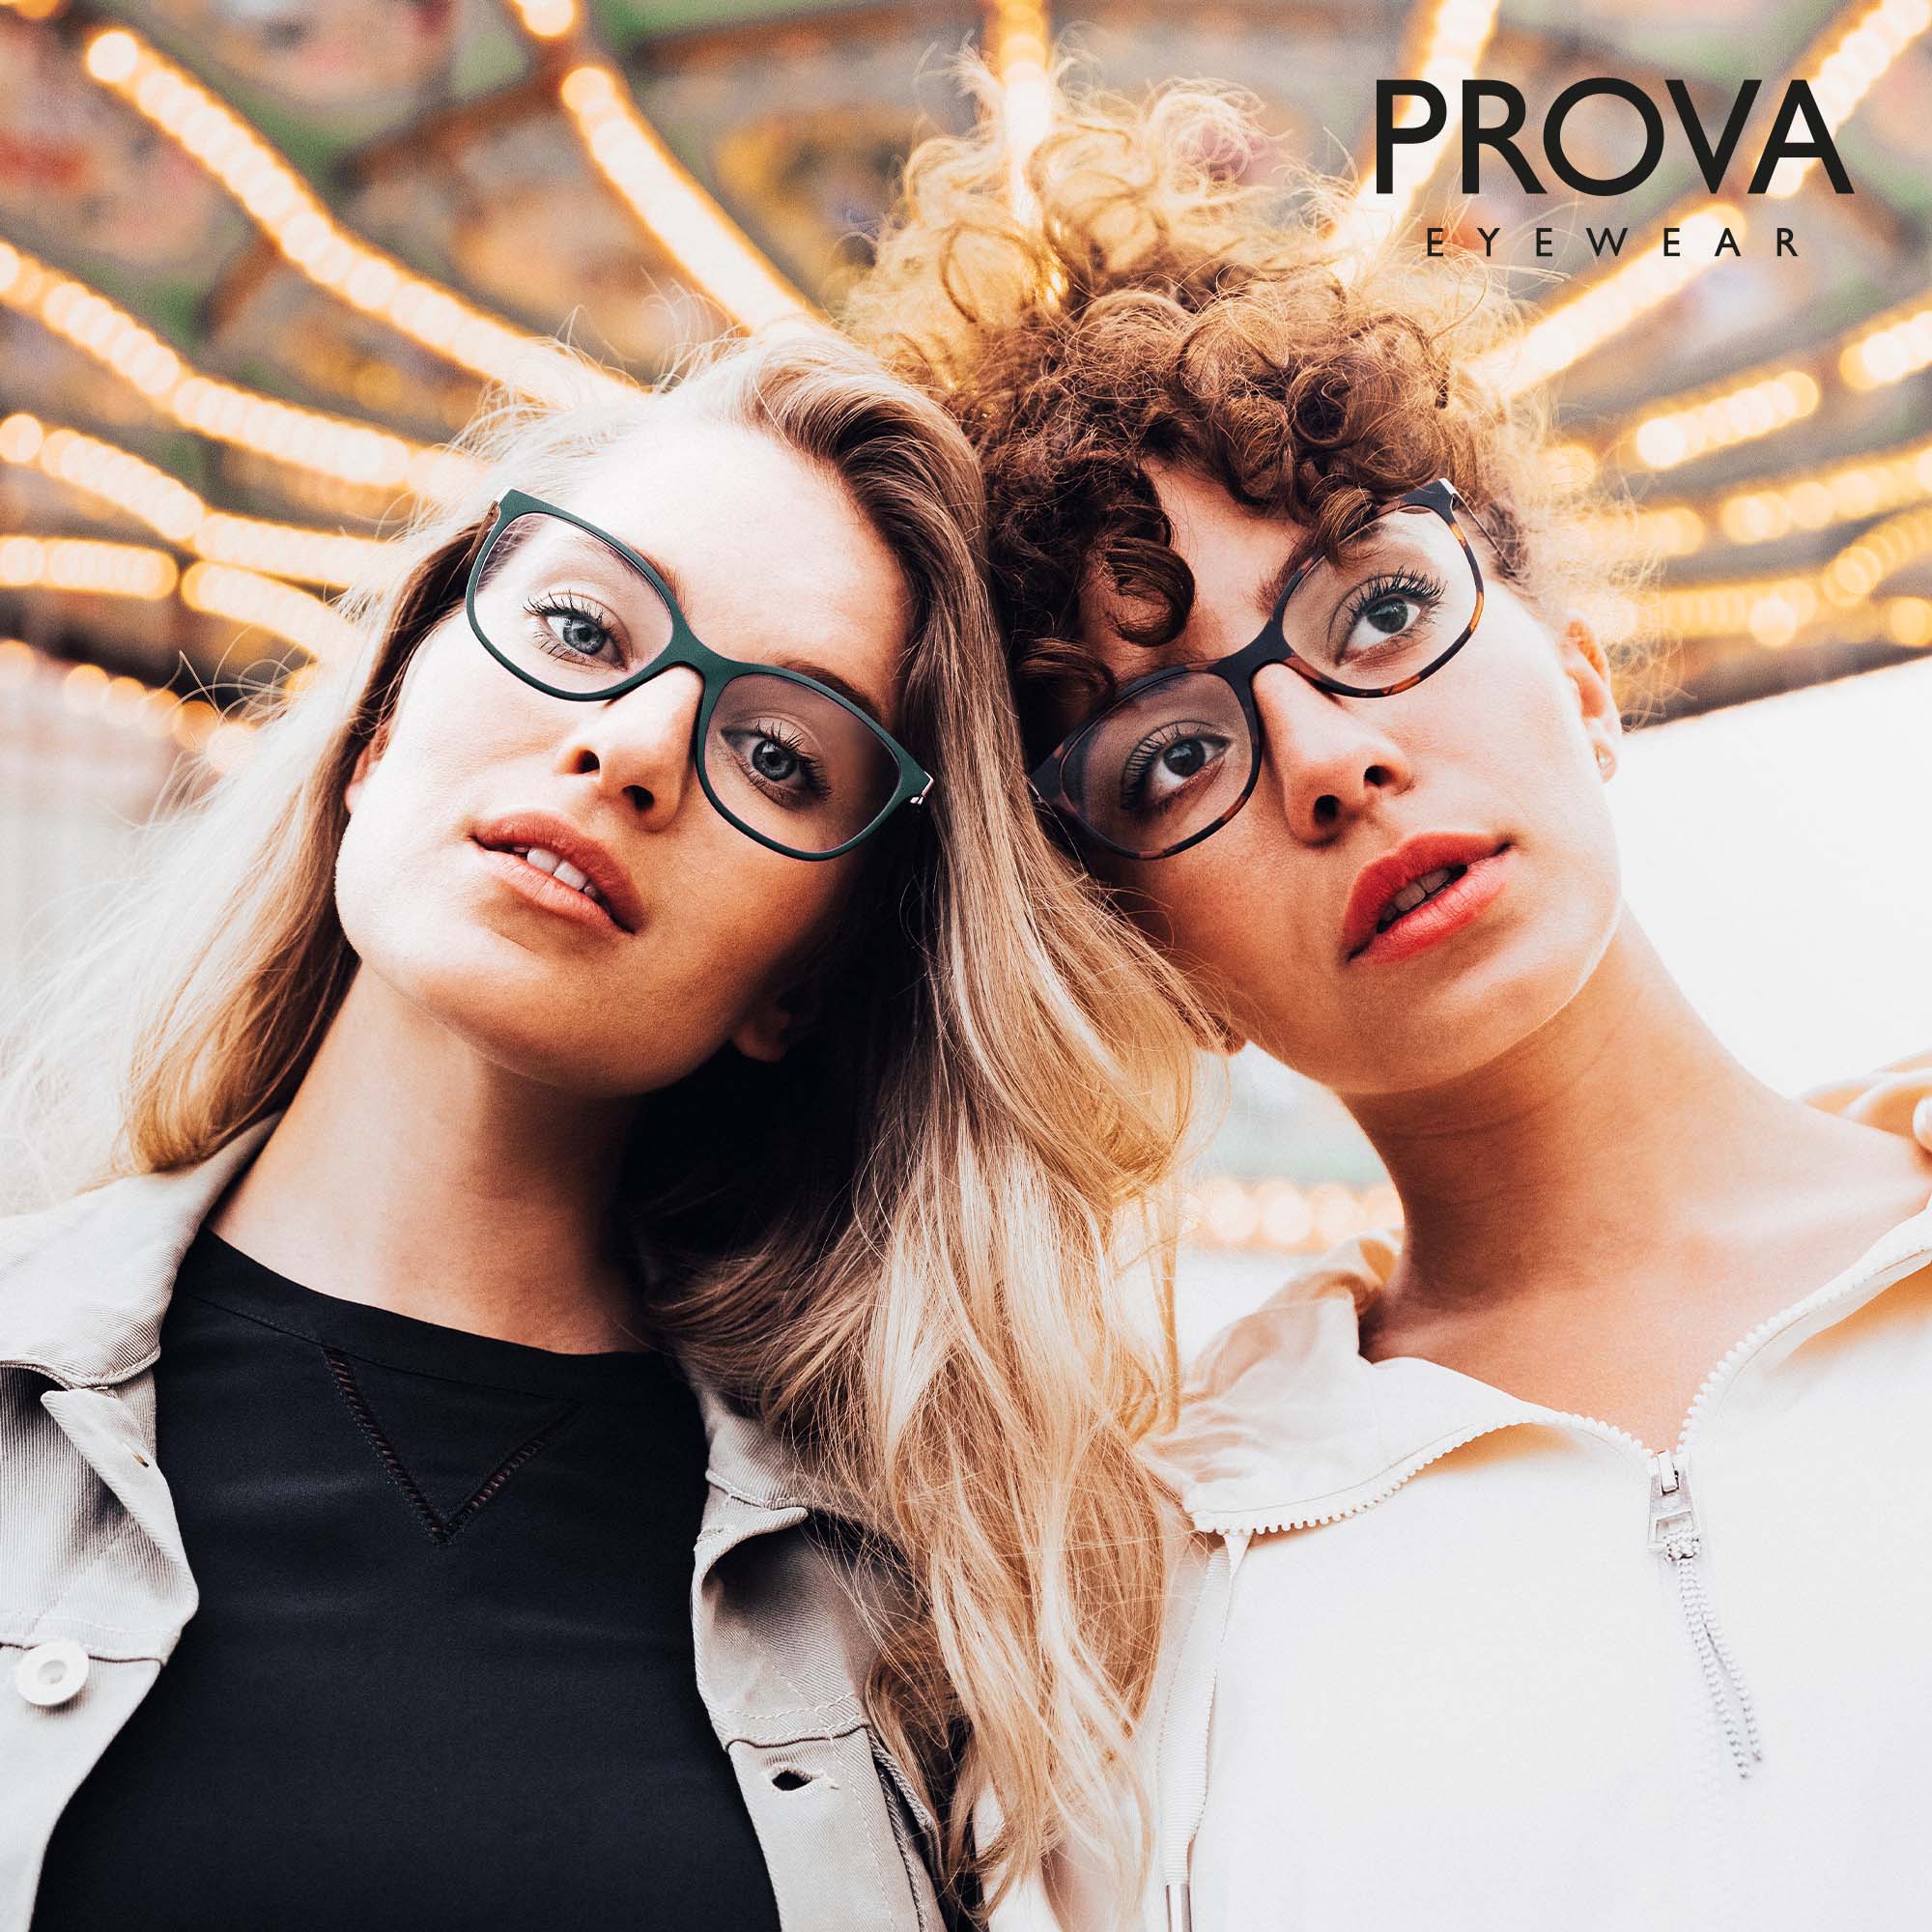 Zwei Frauen stehen zusammen vor einem Karussell und tragen Brillen von PROVA Eyewear